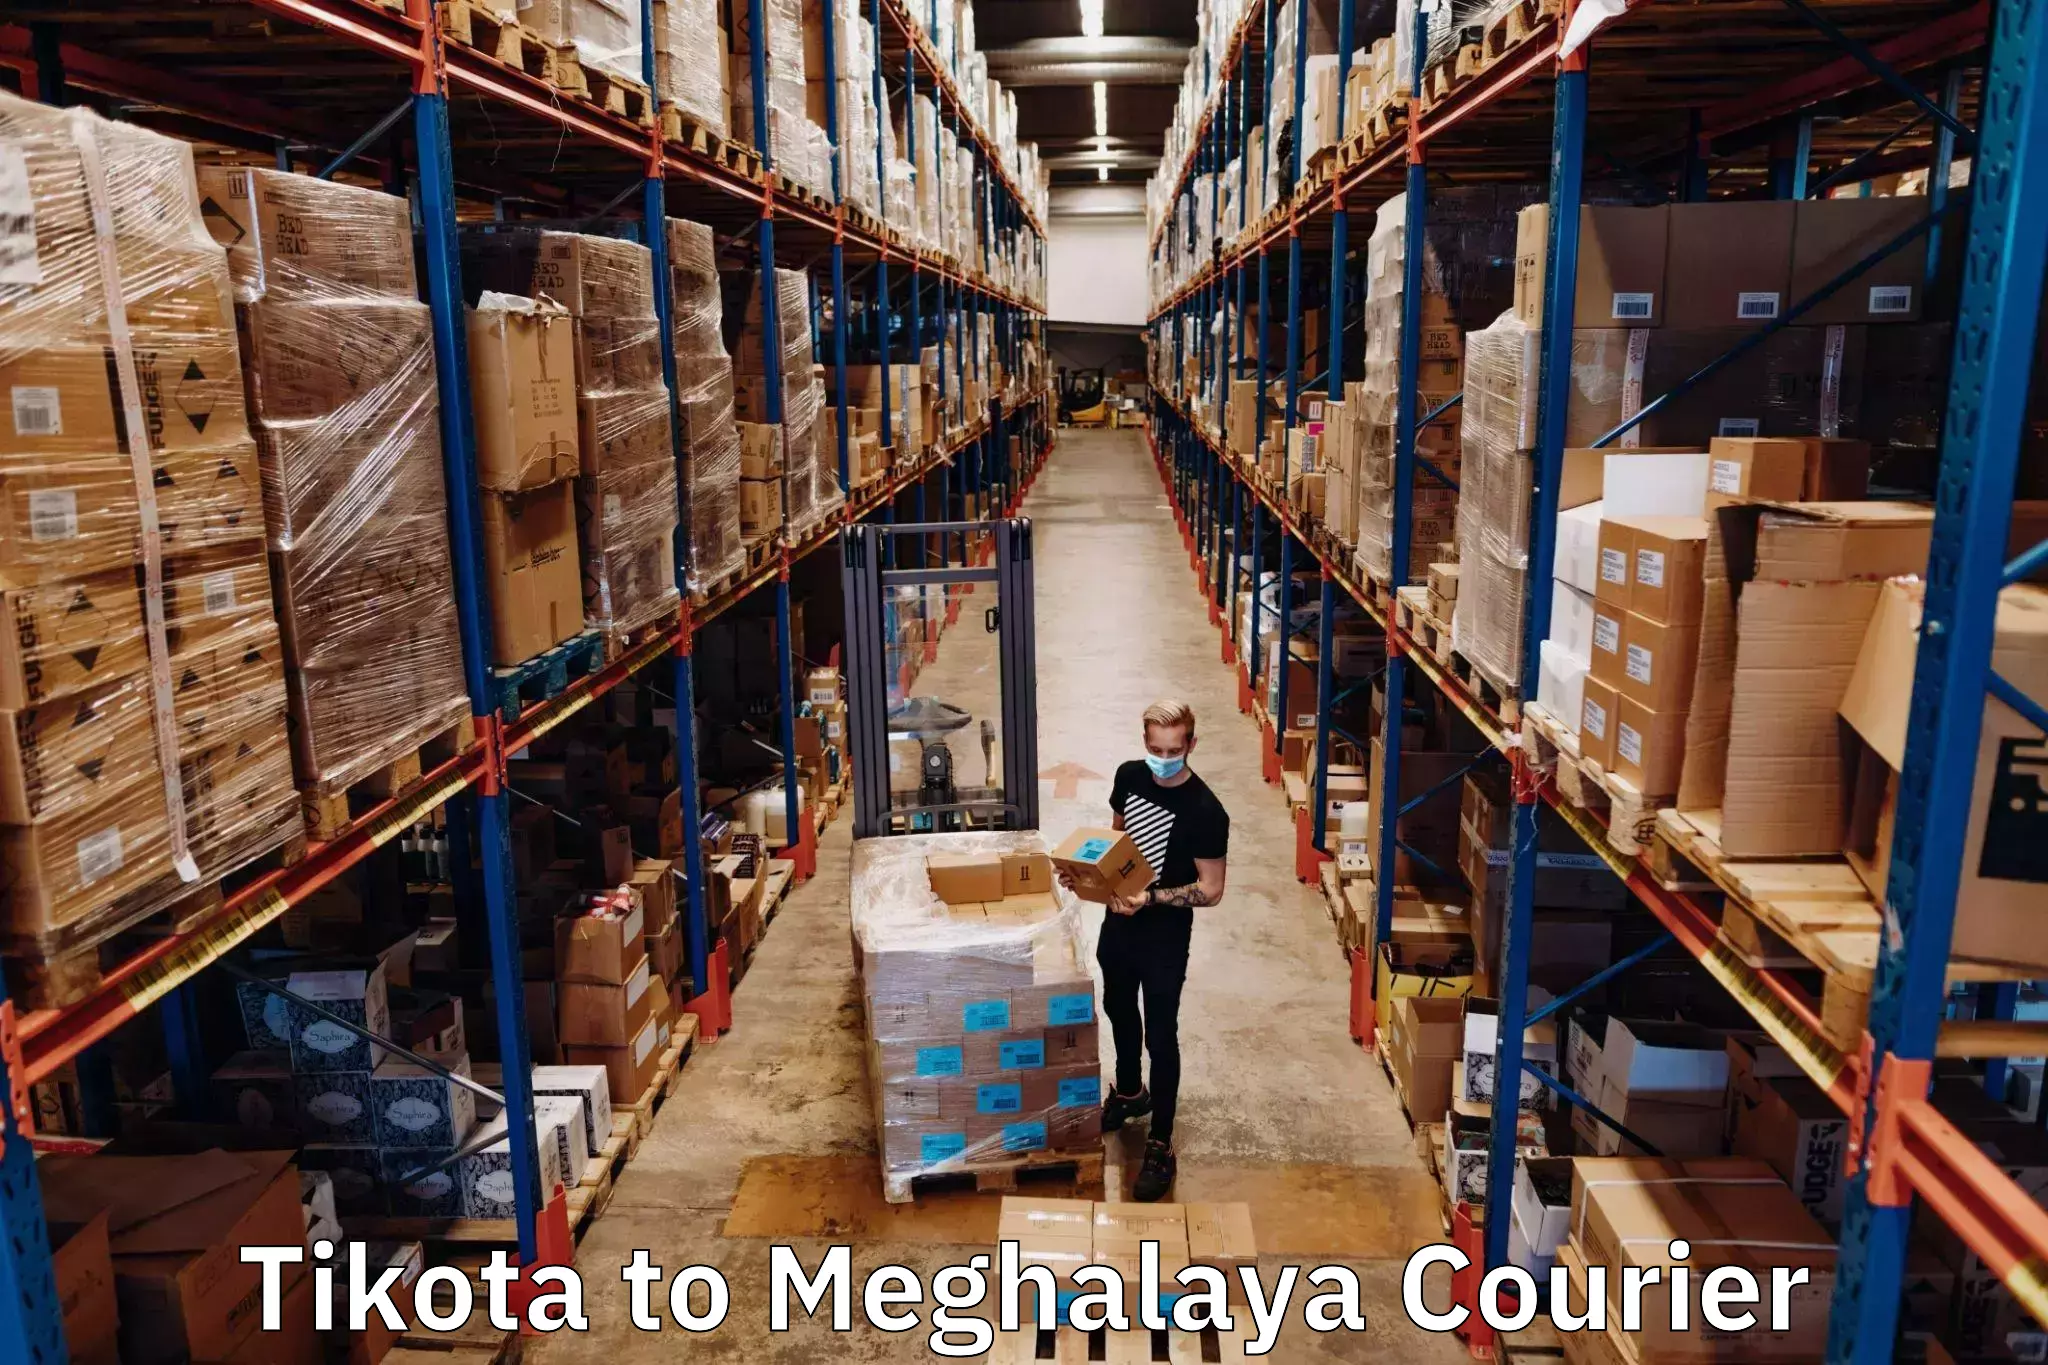 High-speed parcel service Tikota to Meghalaya